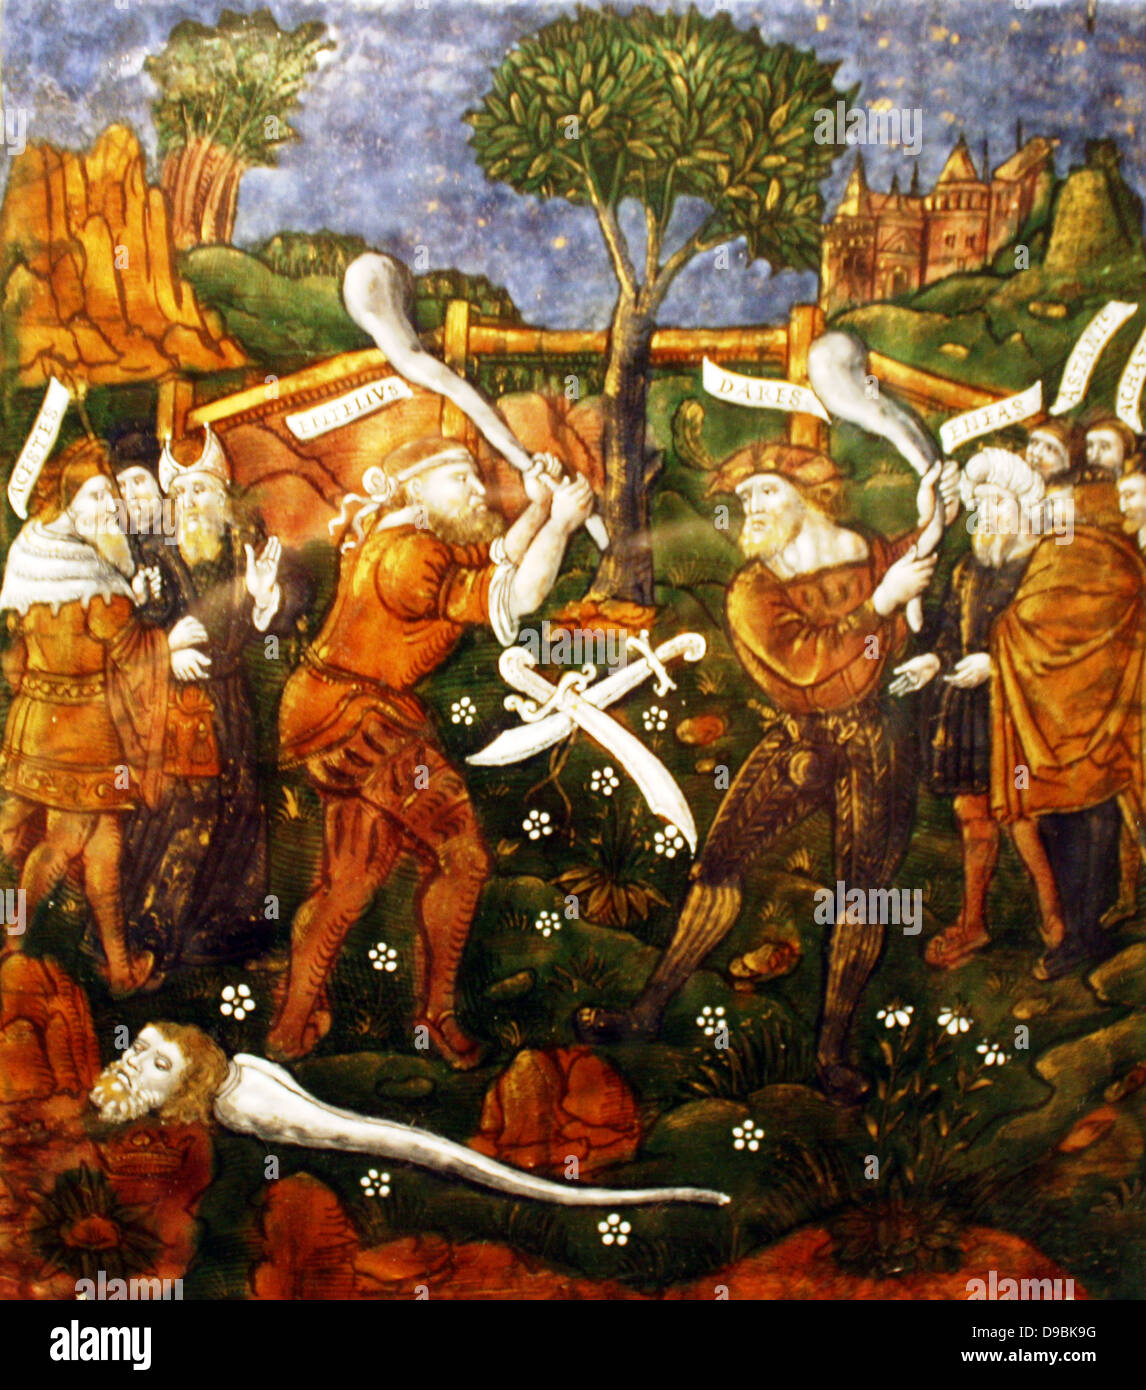 La placca : Turnus travolti dalla Trojan, attraversa il fiume per tornare ai suoi compagni. Eneide, Libro IX, Limoges, circa 1533-35. Foto Stock